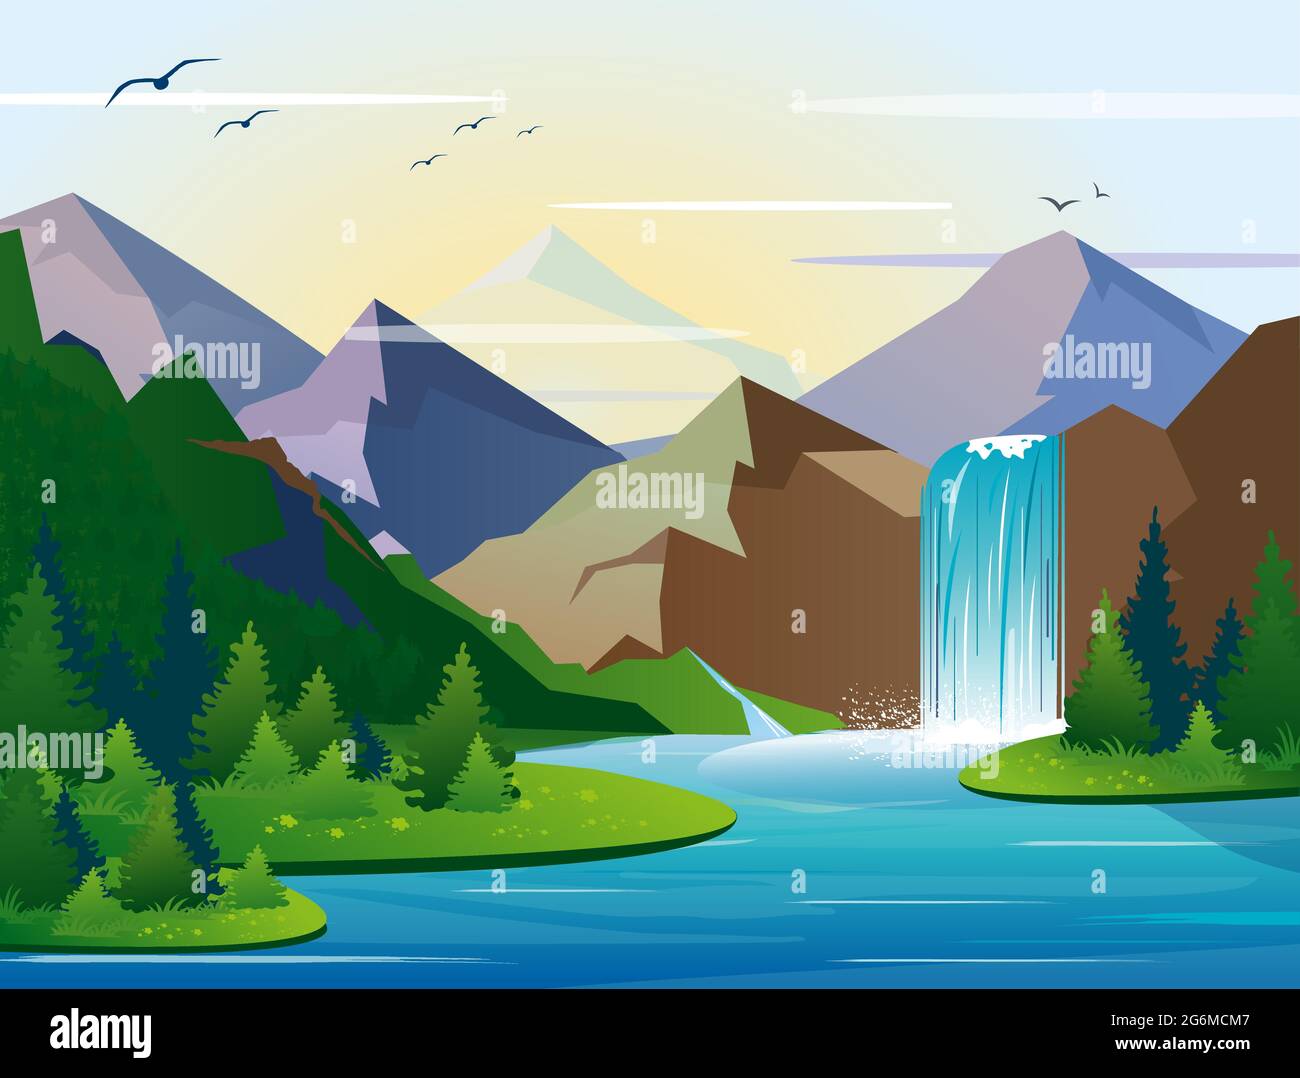 Immagine vettoriale di una bella cascata in montagna paesaggio con alberi, rocce e cielo. Legno verde con natura selvaggia, lago e cespuglio fogliame in Illustrazione Vettoriale